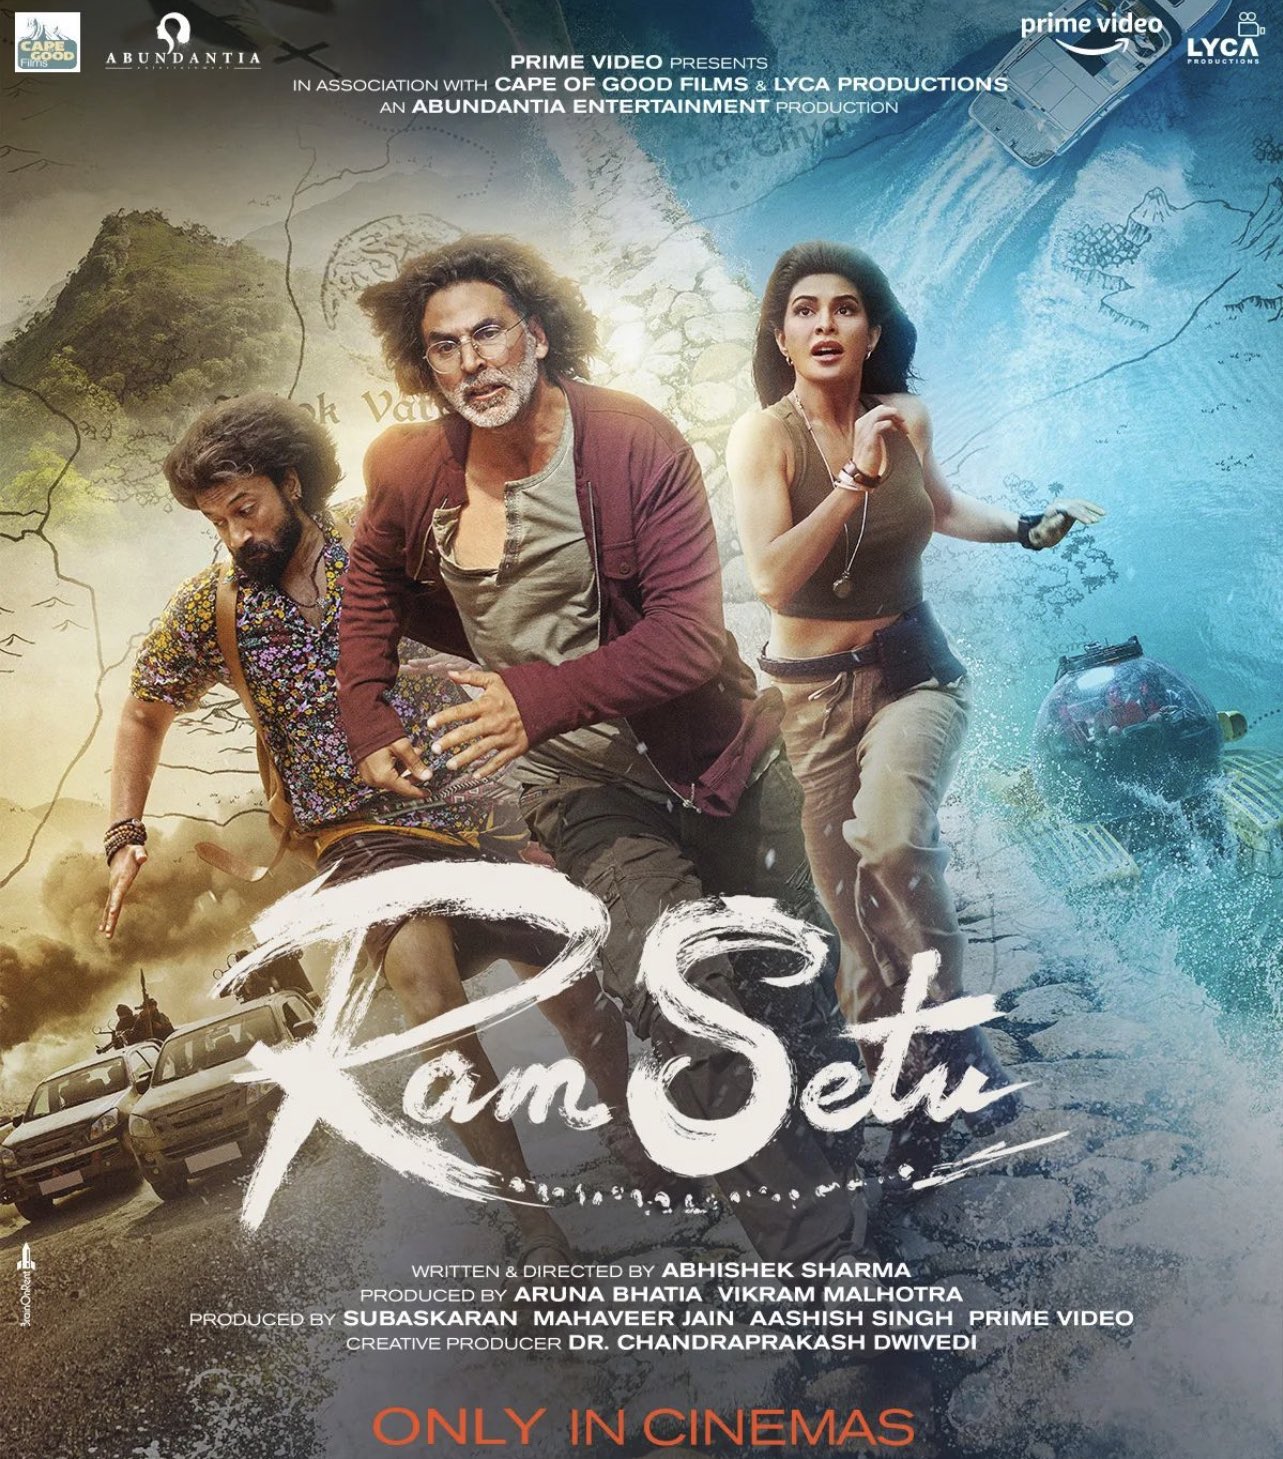 Ram Setu Movie Review movie poster